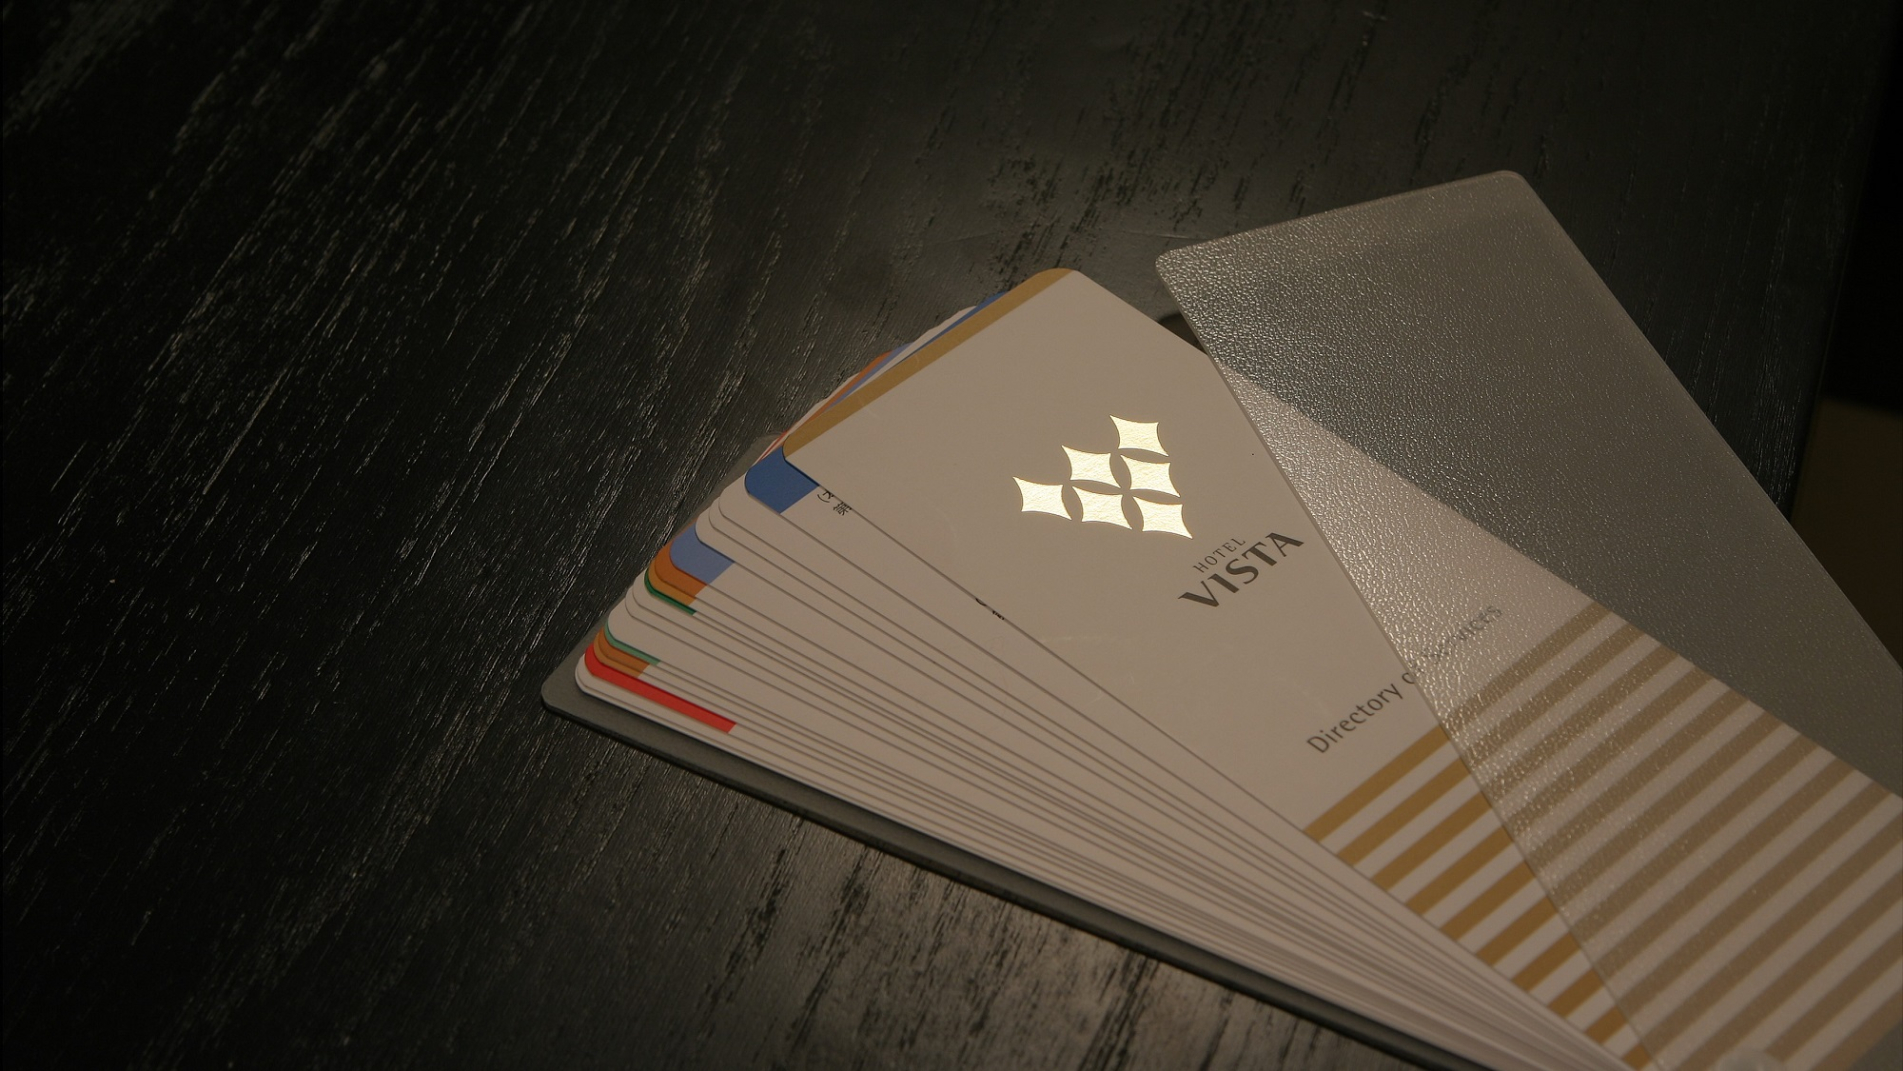 ビスタのカードキーケースが置かれている写真